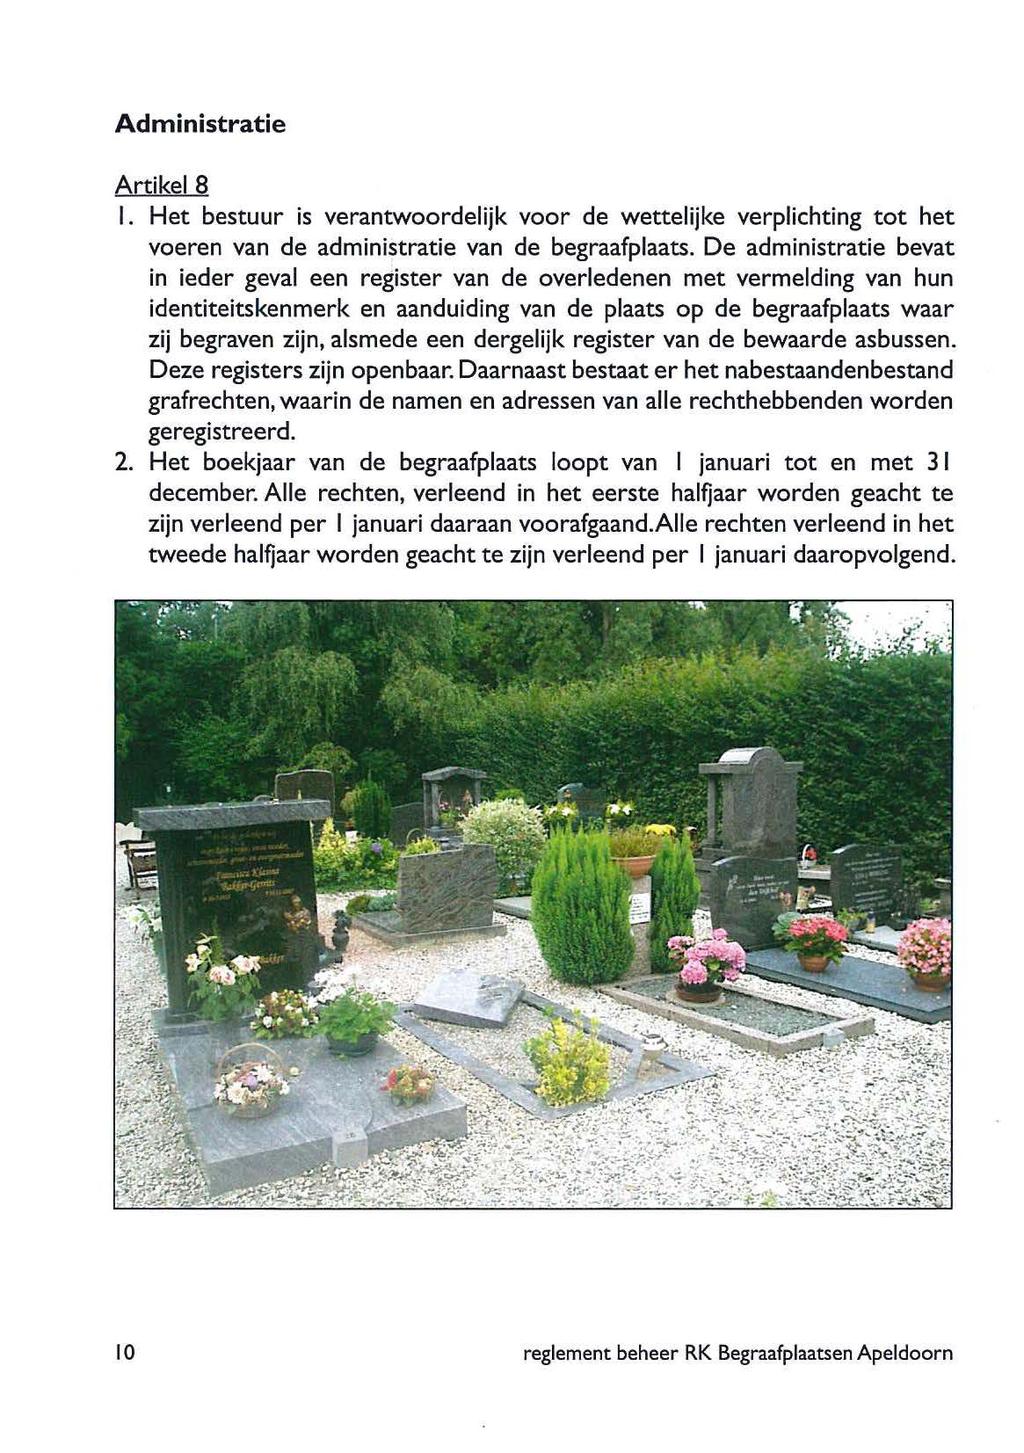 Administratie ArtikelS I. Het bestuur is verantwoordelijk voor de wettelijke verplichting tot het voeren van de administratie van de begraafplaats.